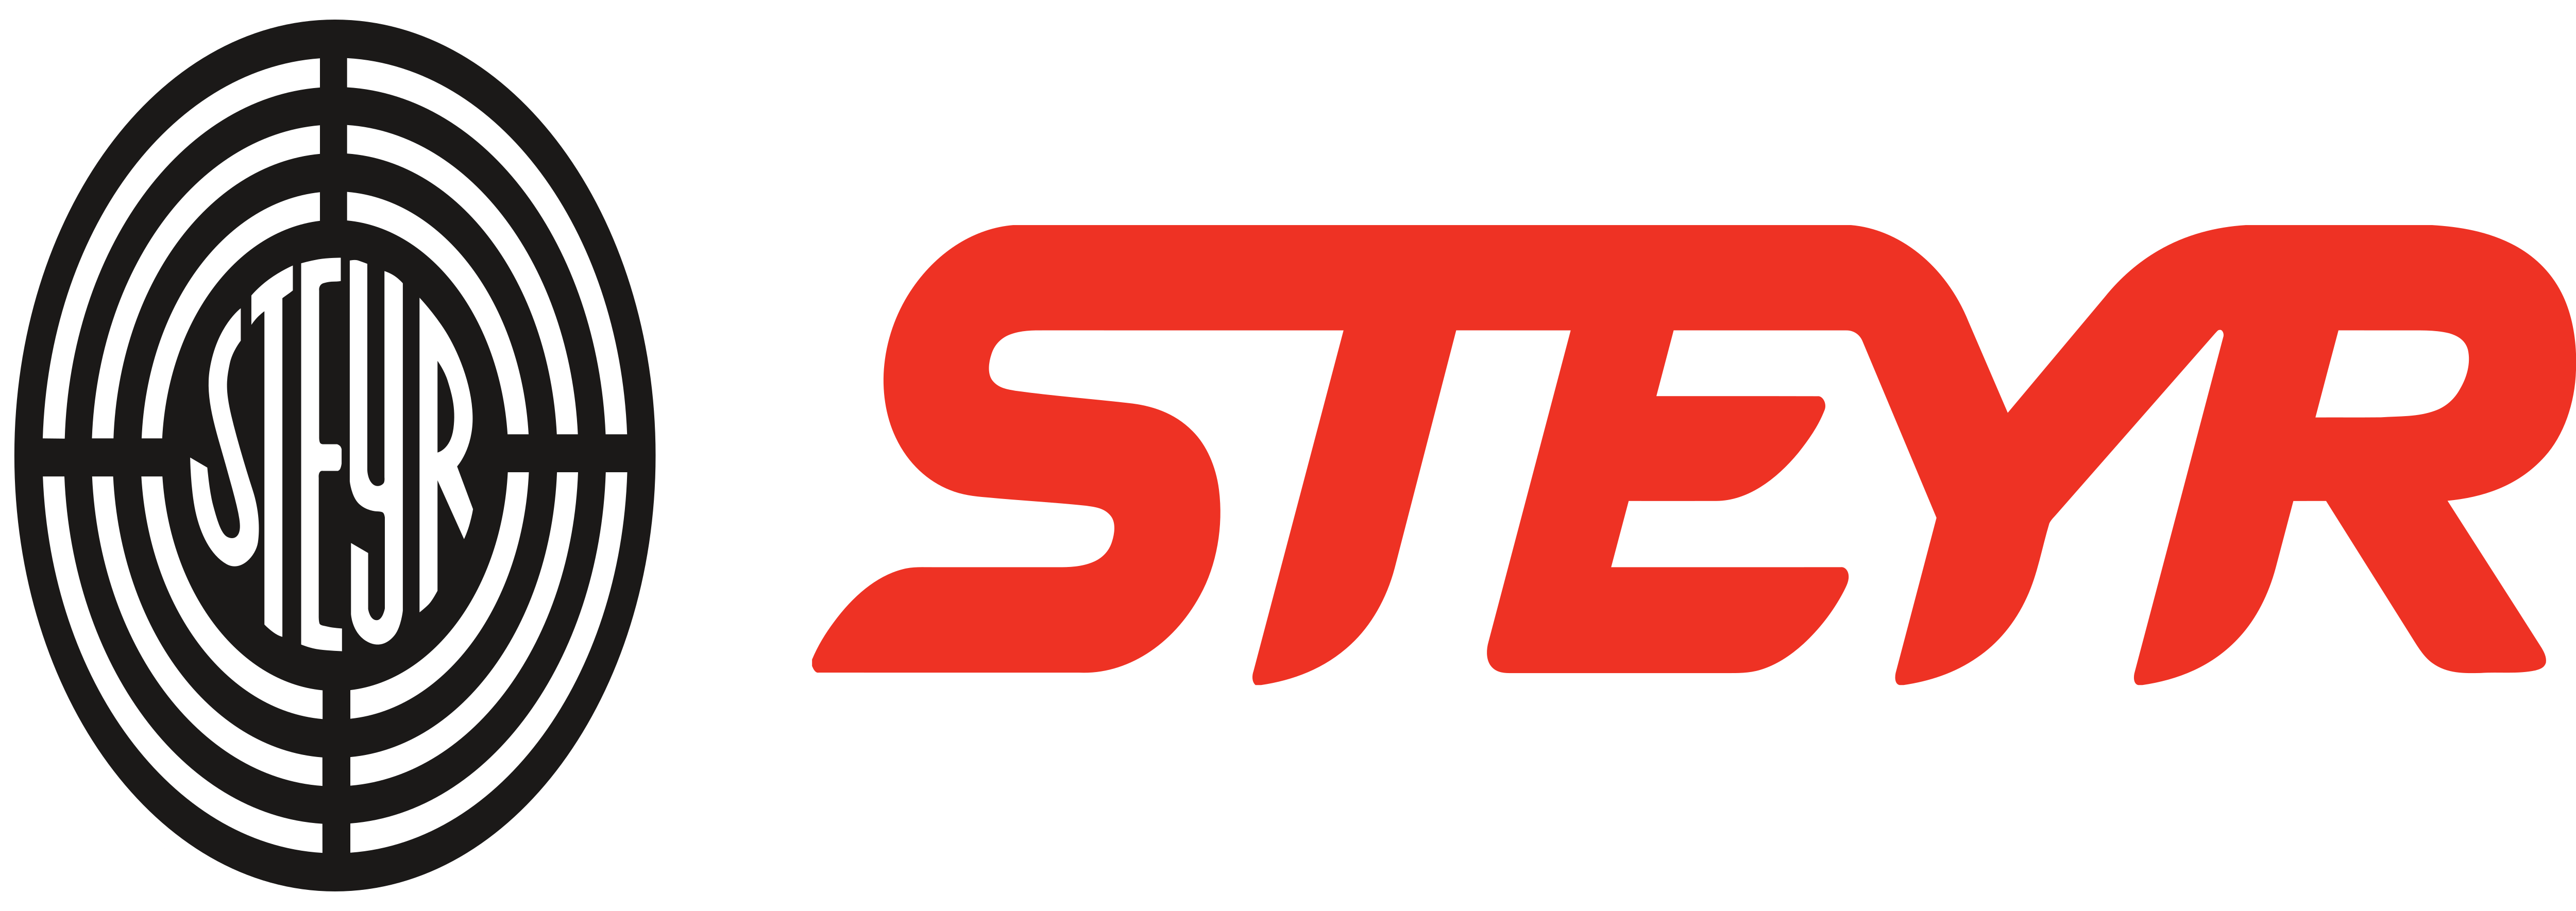 Steyr Logo - Steyr Mannlicher AG